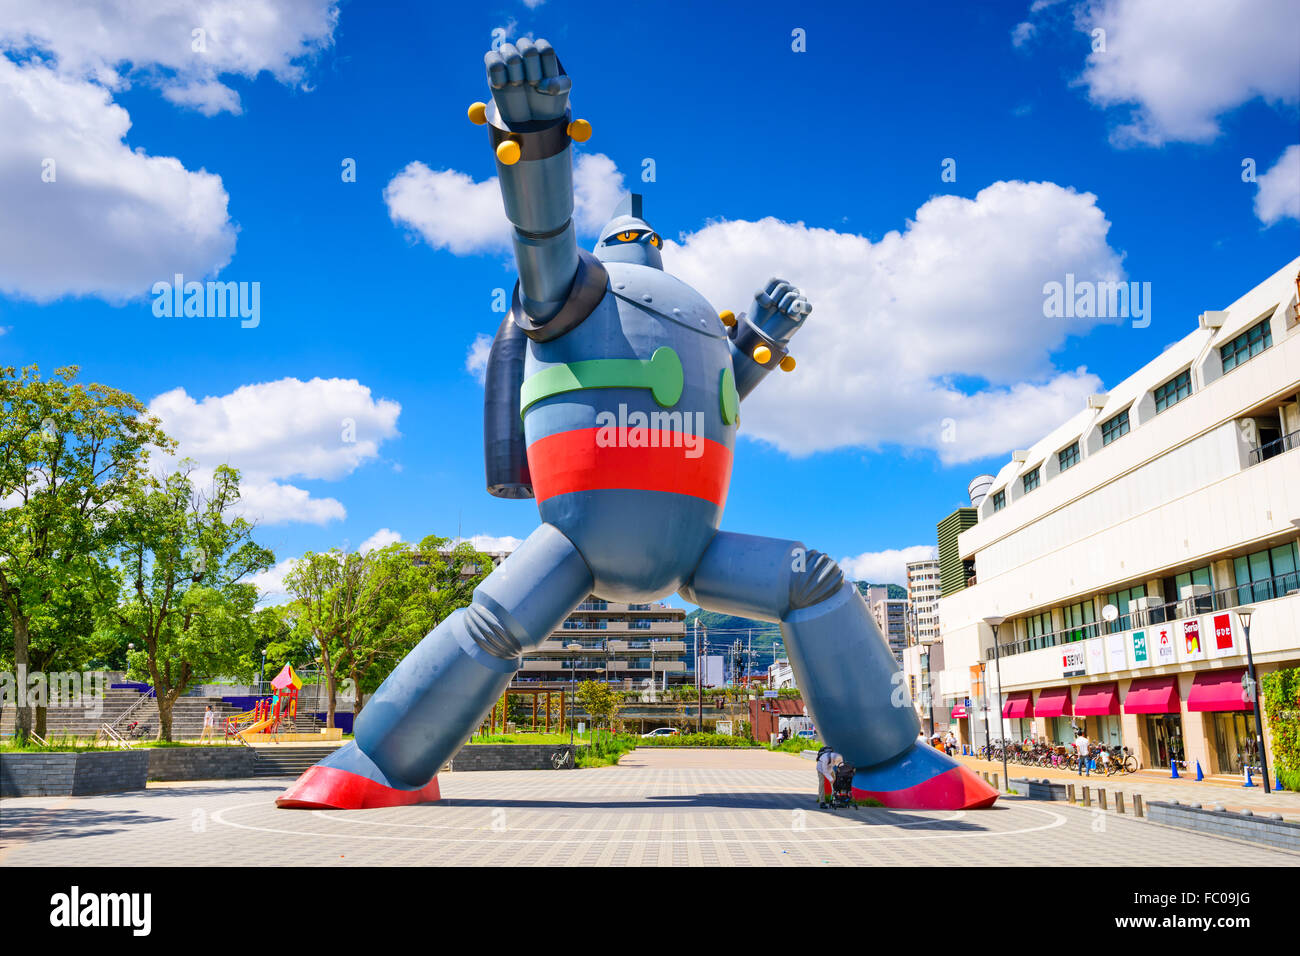 Le robot Gigantor monument de la gare de shin-nagata à Kobe, au Japon. Banque D'Images